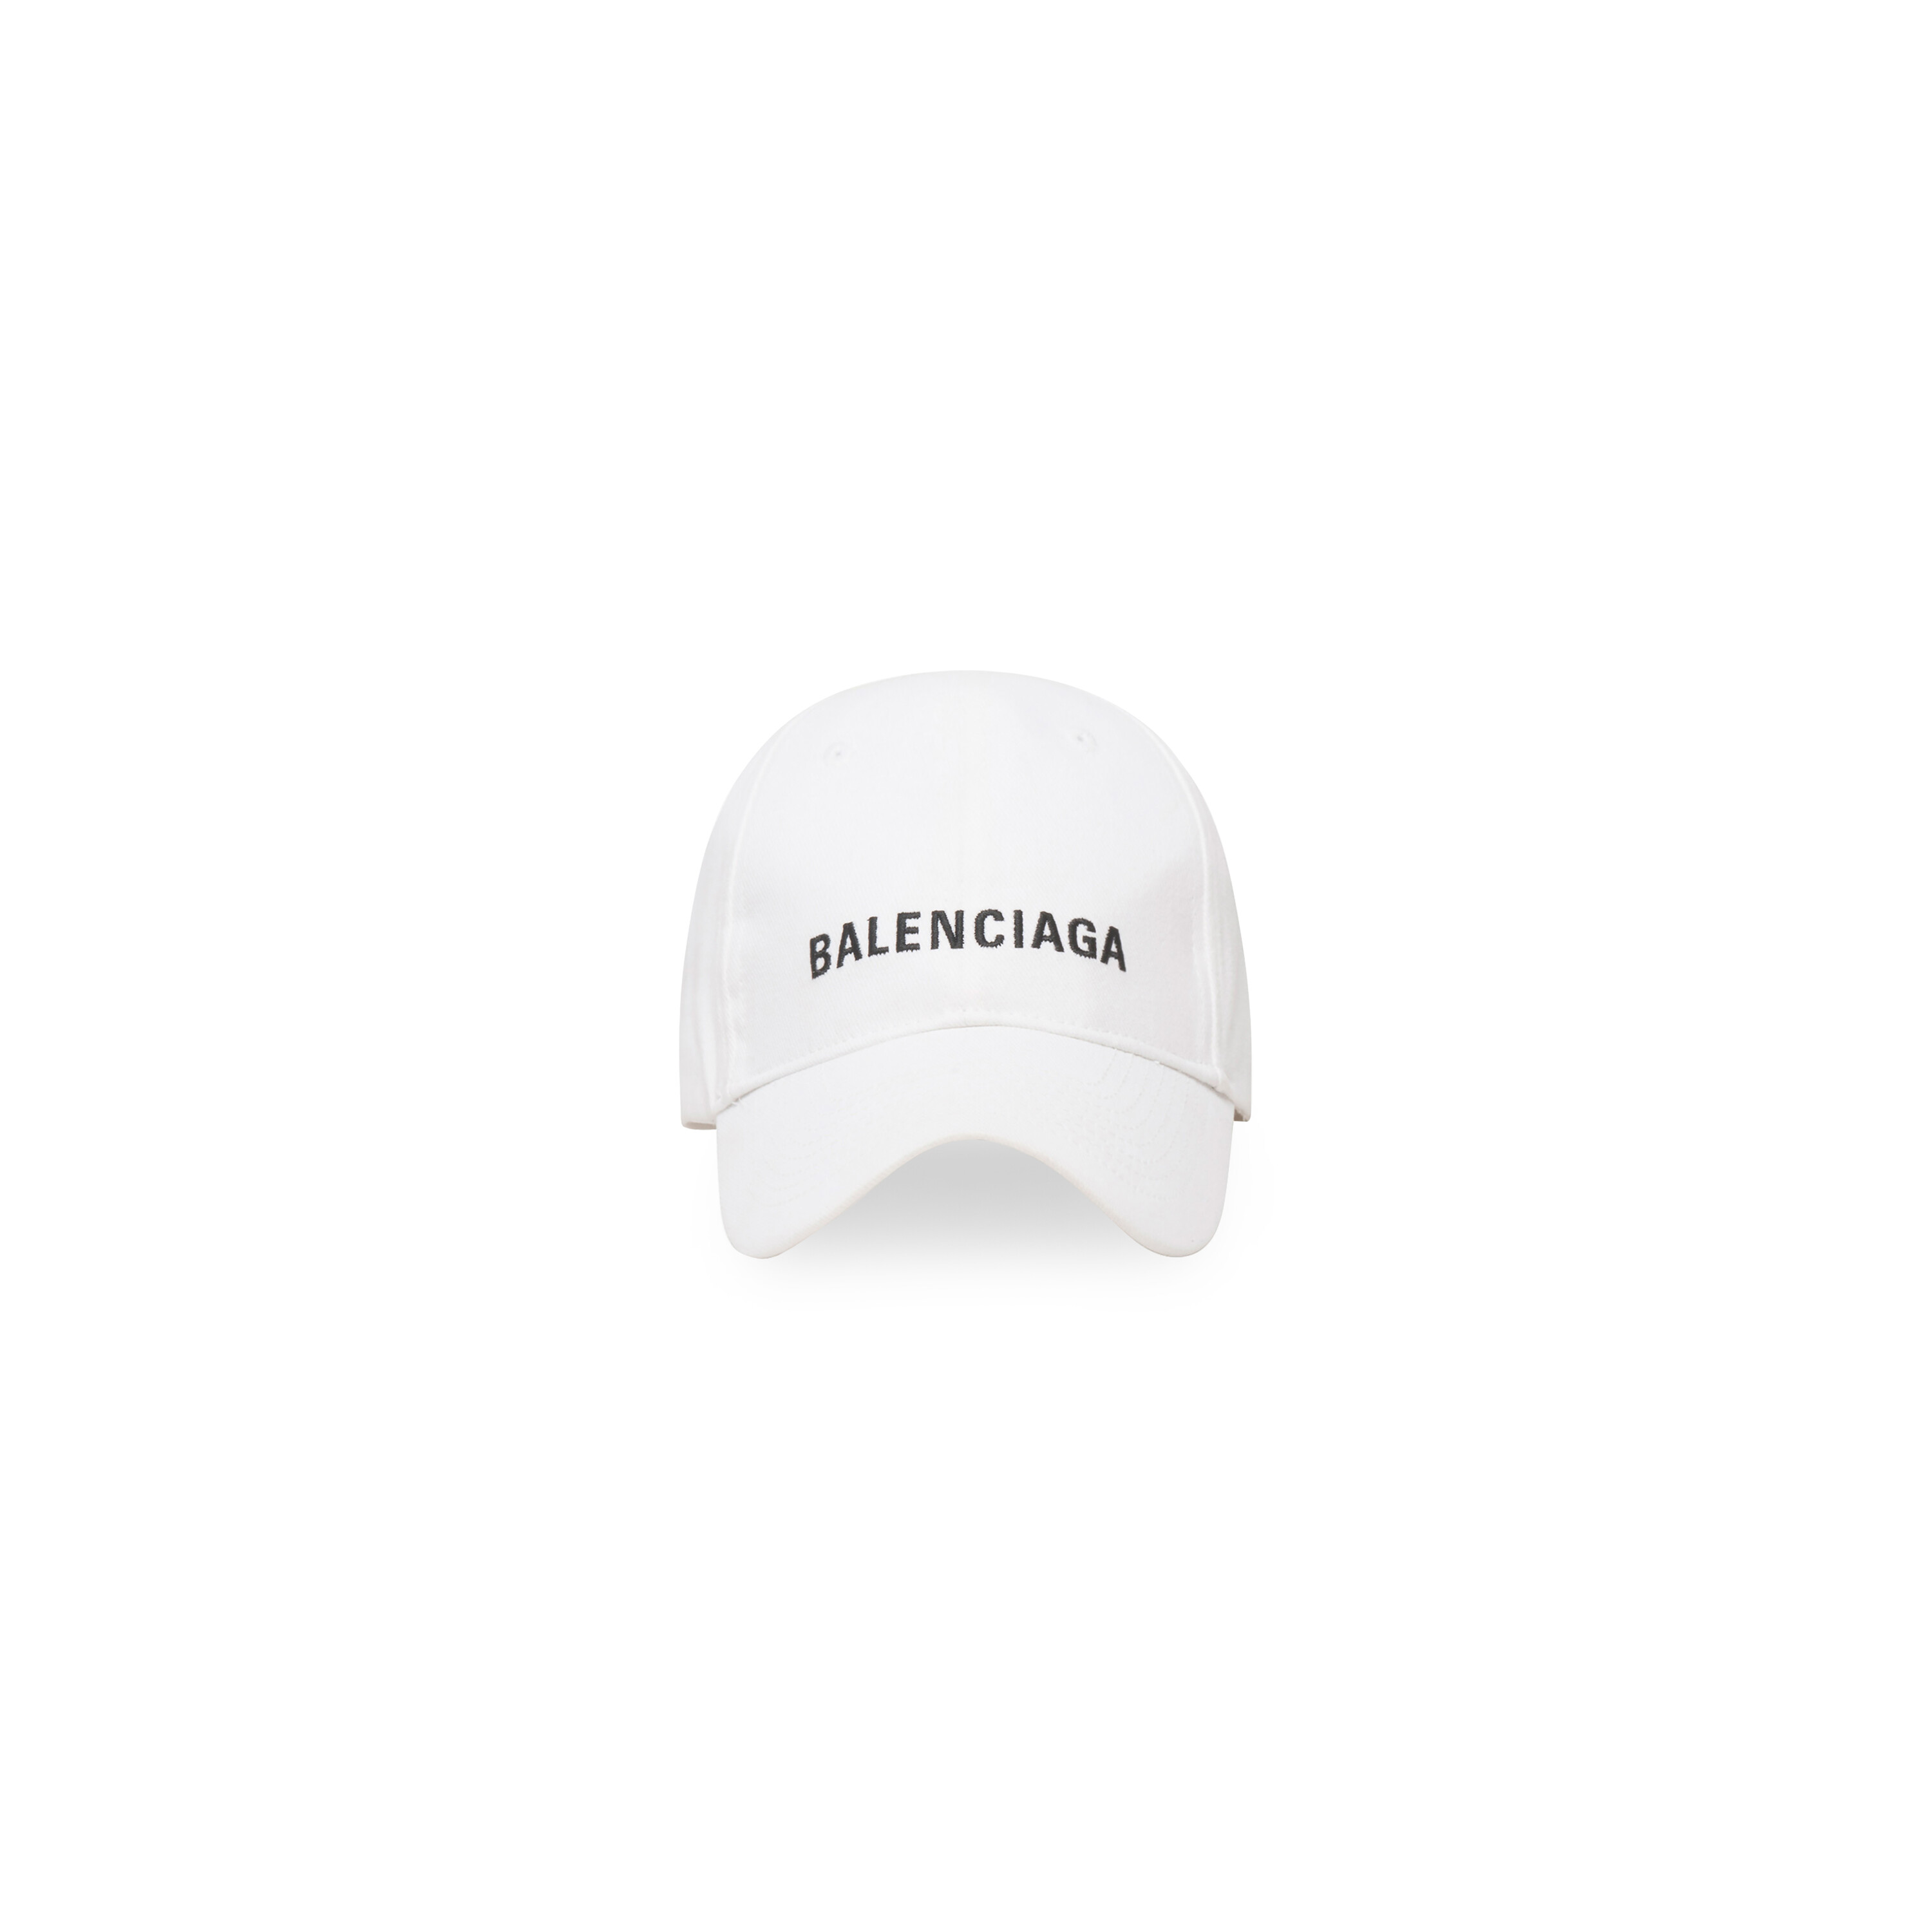 Balenciaga Cap in White/black   Balenciaga US